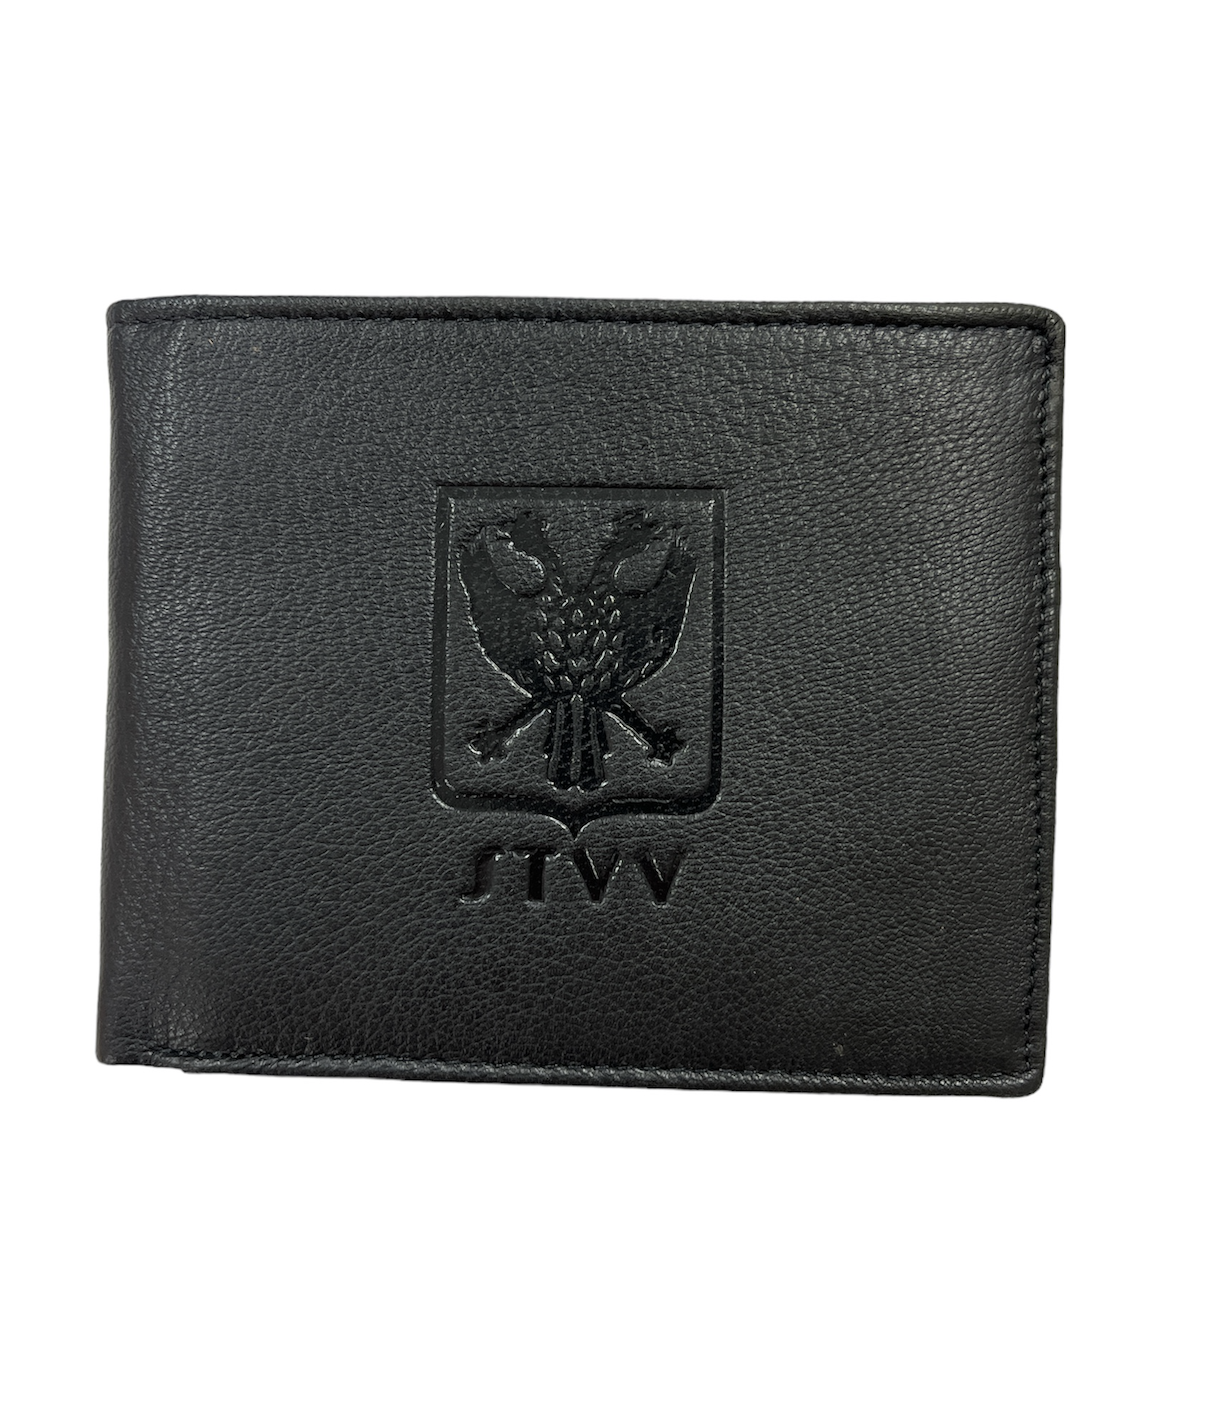 Topfanz Portefeuille zwart leer met logo STVV